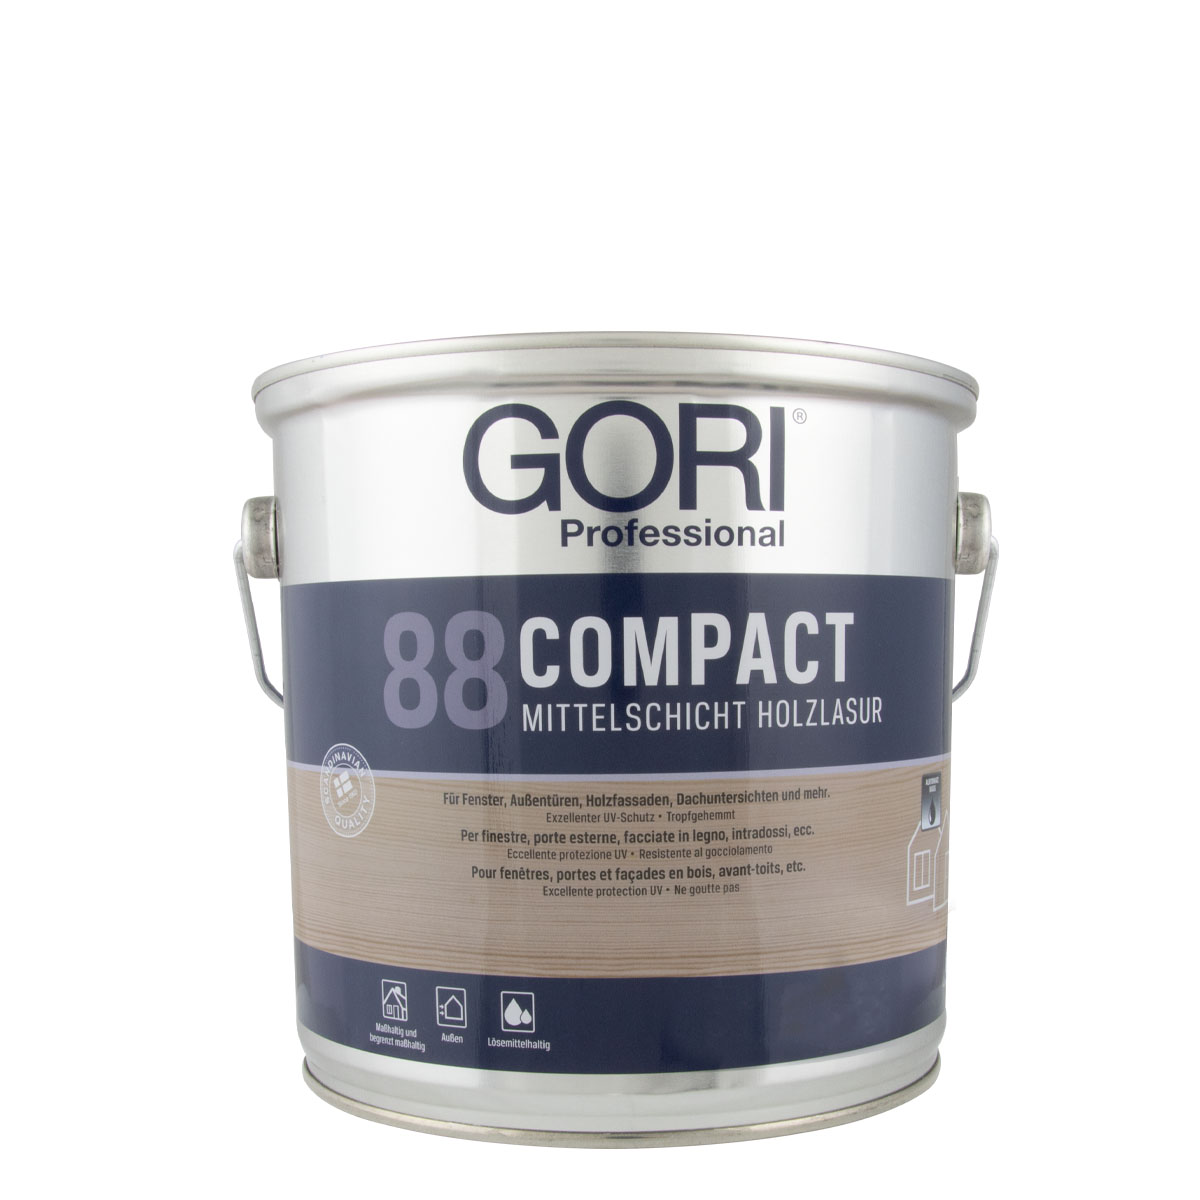 Gori_88_compact_2,5l_gross